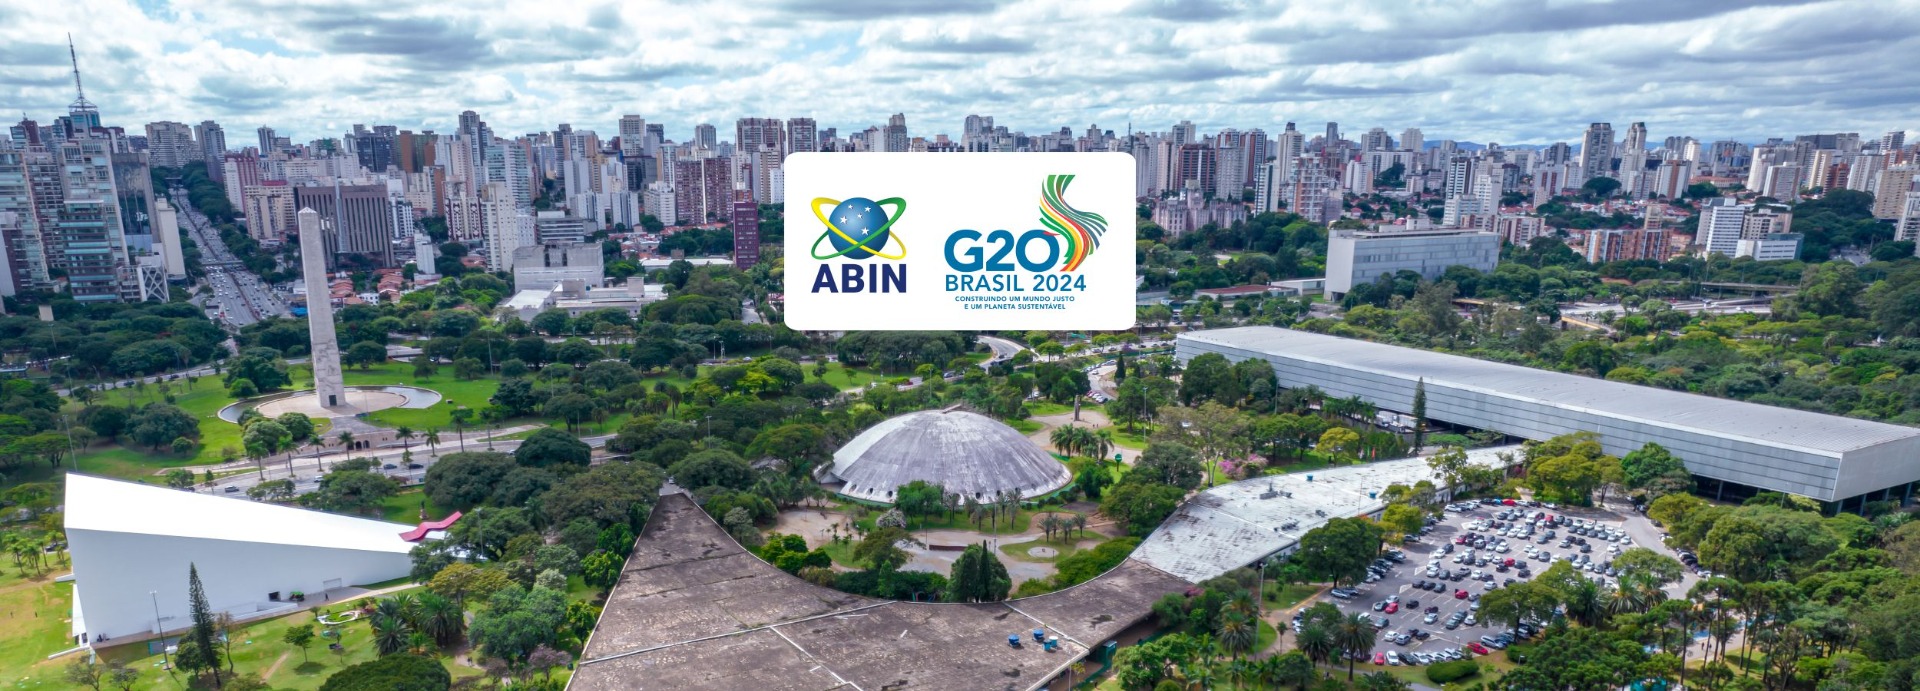 G20 São Paulo.jpg